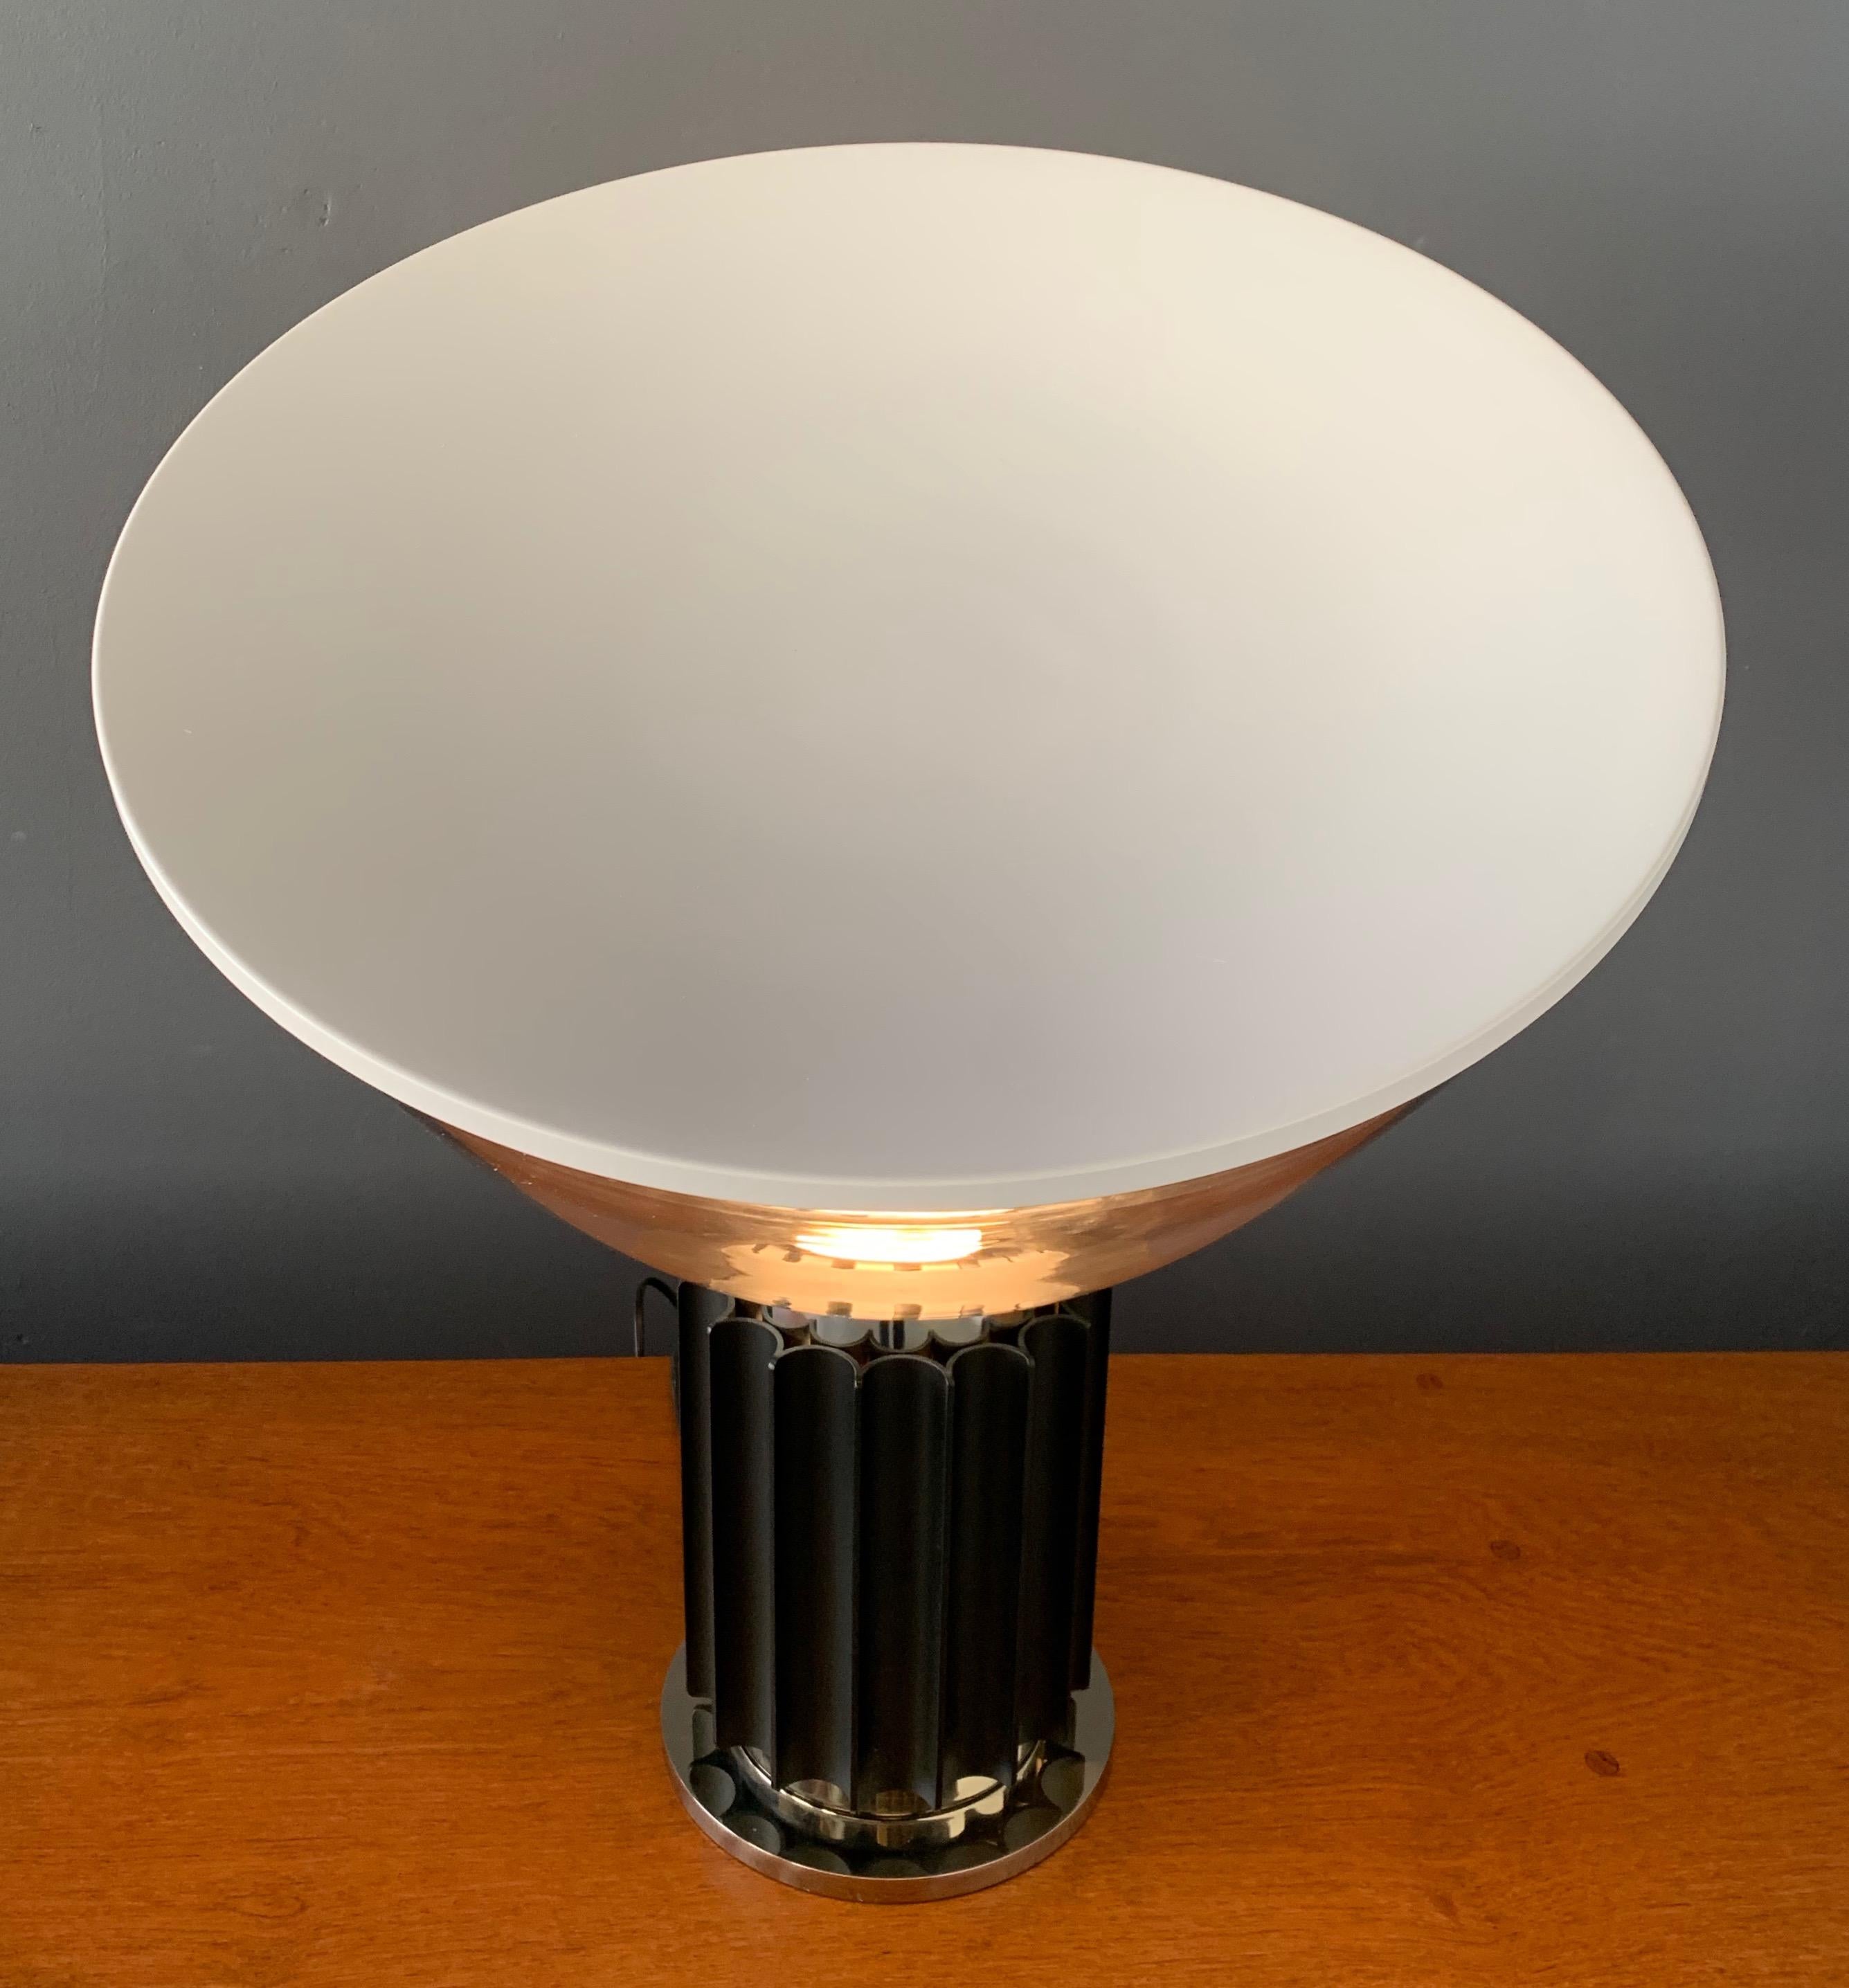 European Taccia Table Lamp Designed by Achille Castiglioni for Flos